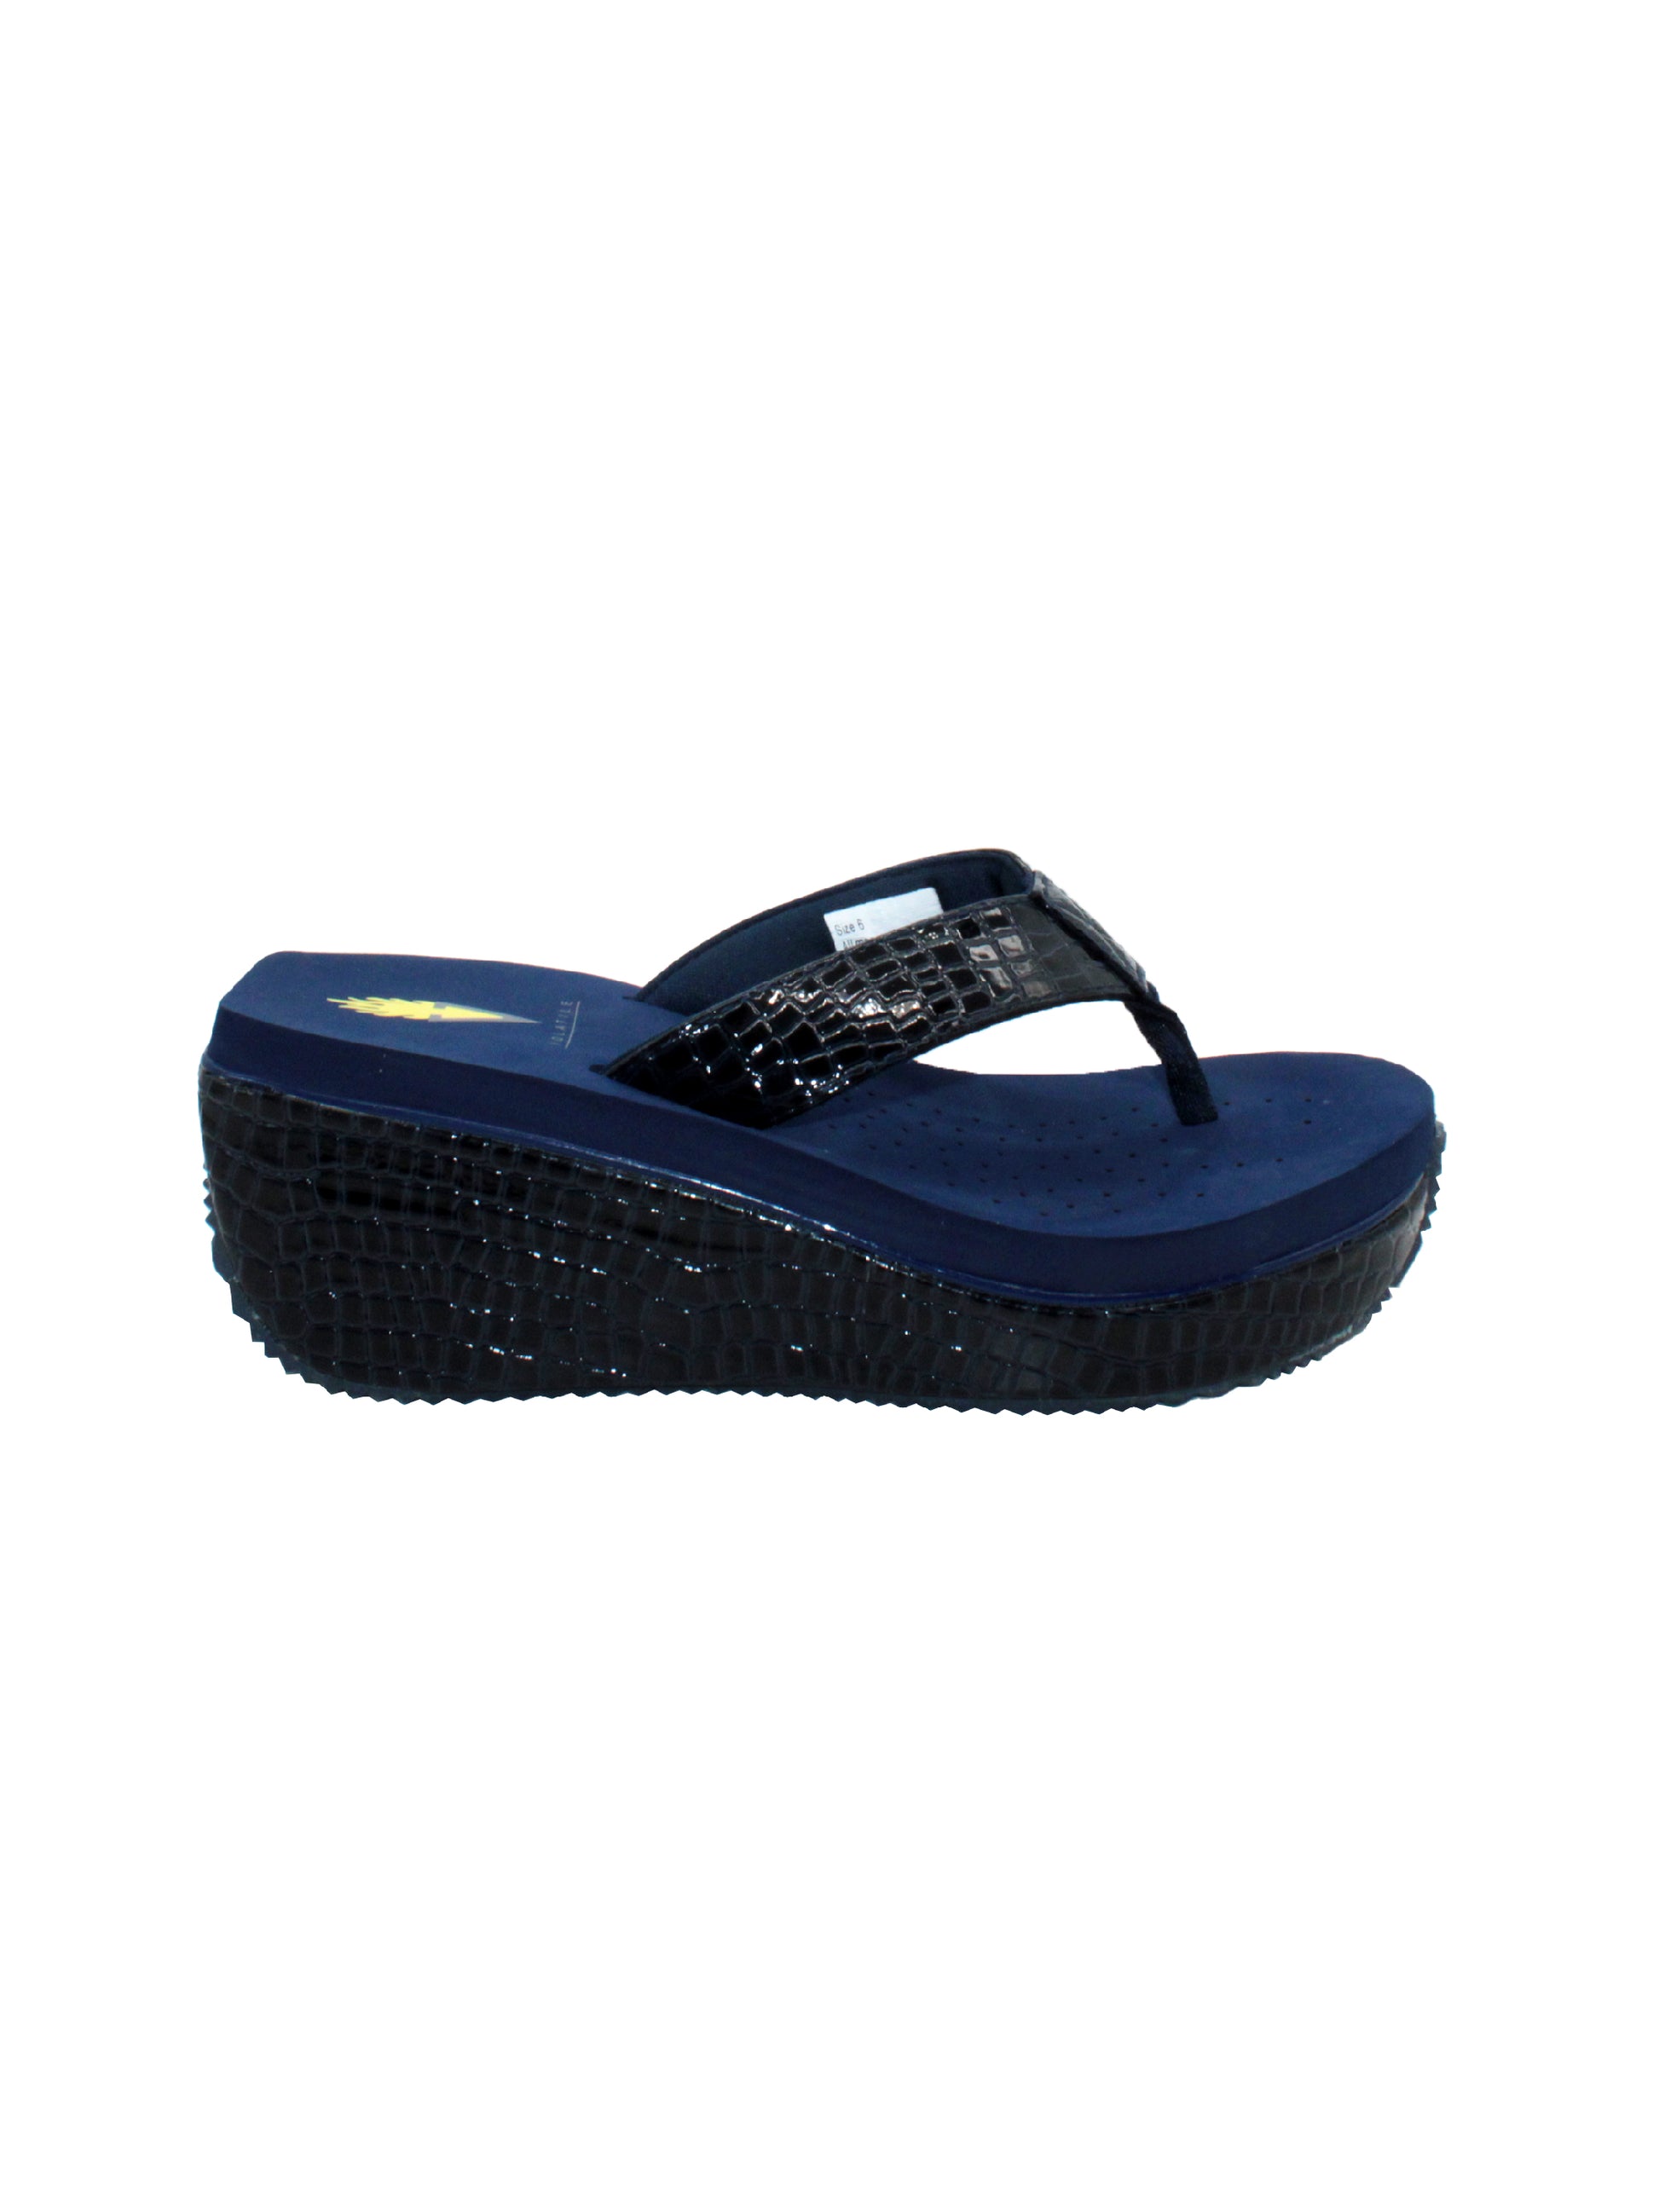 Women's Flip Flop Sandals, Black & Blue Flip Flop Sandals